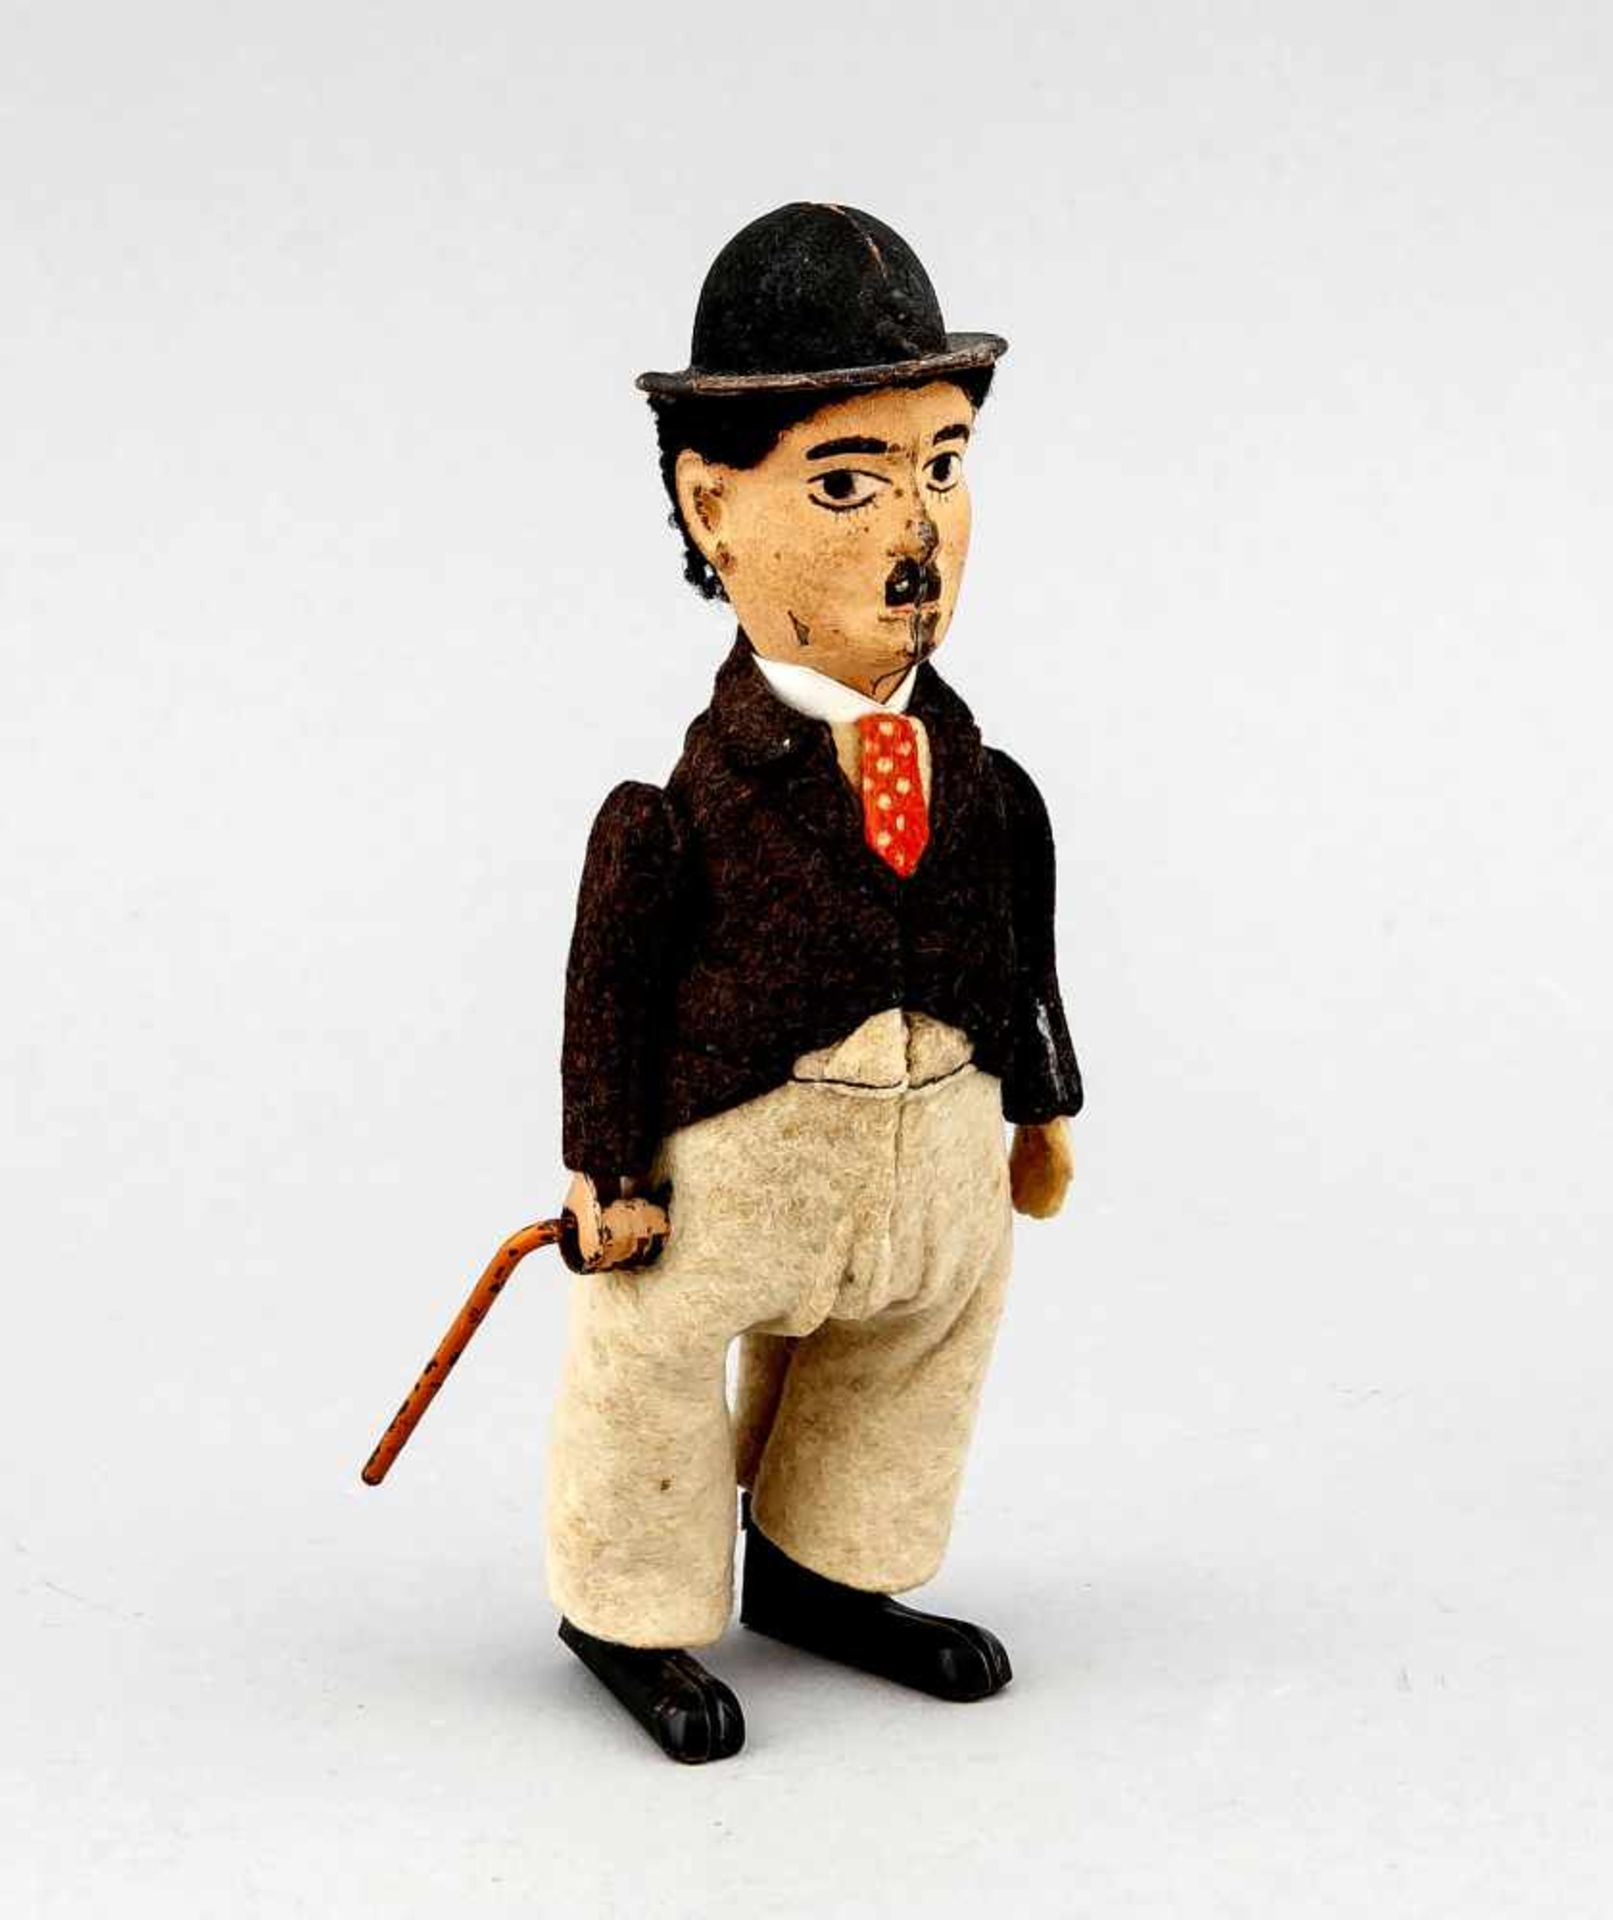 Charlie Chaplin von Schuco, ca. 1930, mechanisches Spielzeug, Blech und Filz. Schlüsselzum Aufziehen